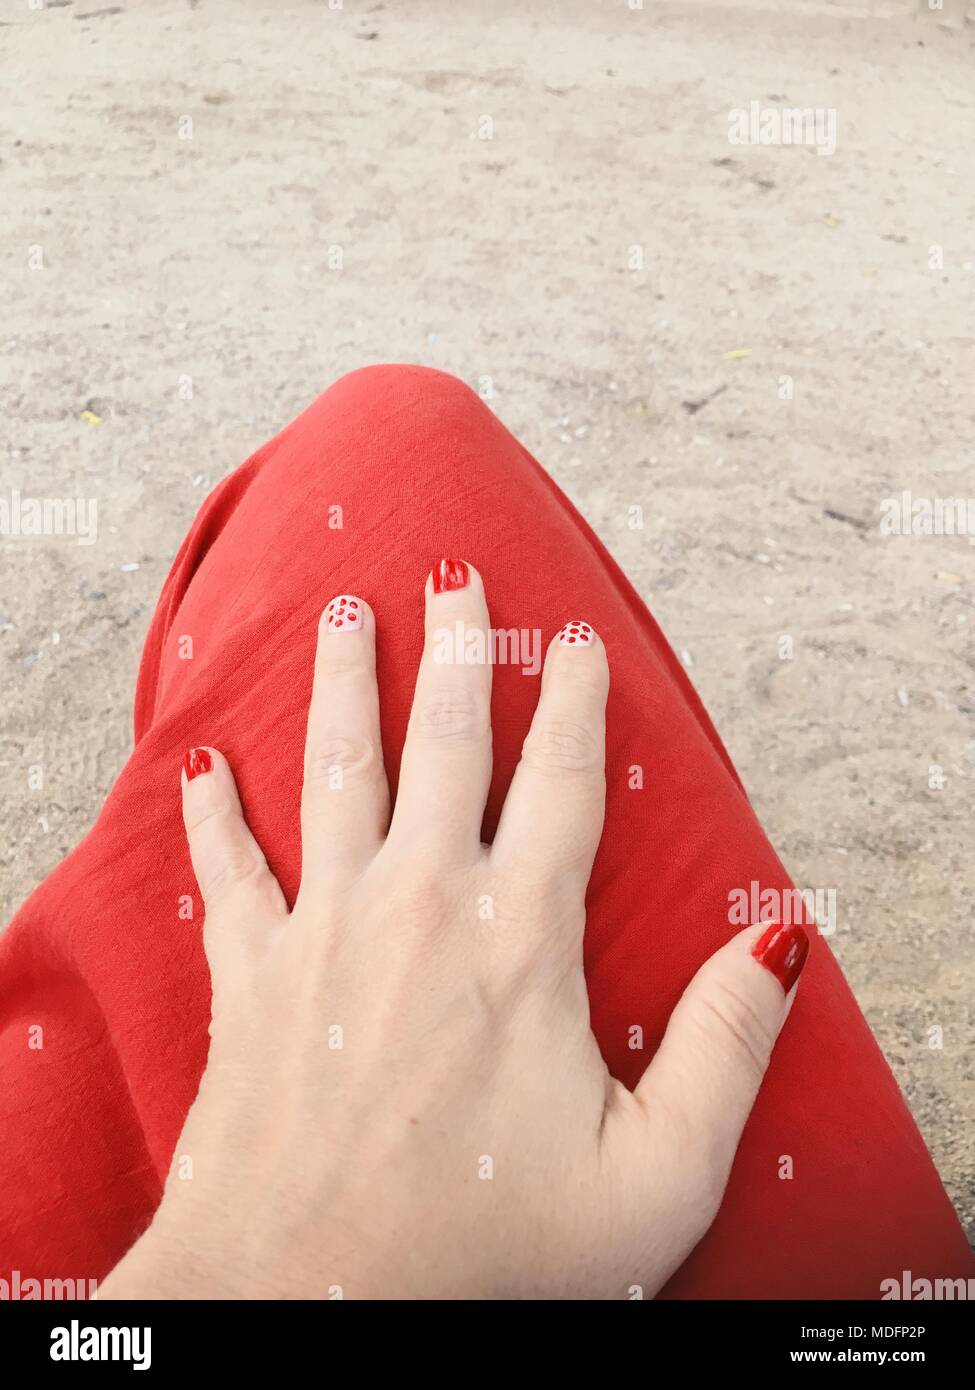 La main de femme sur le genou avec nail art Banque D'Images